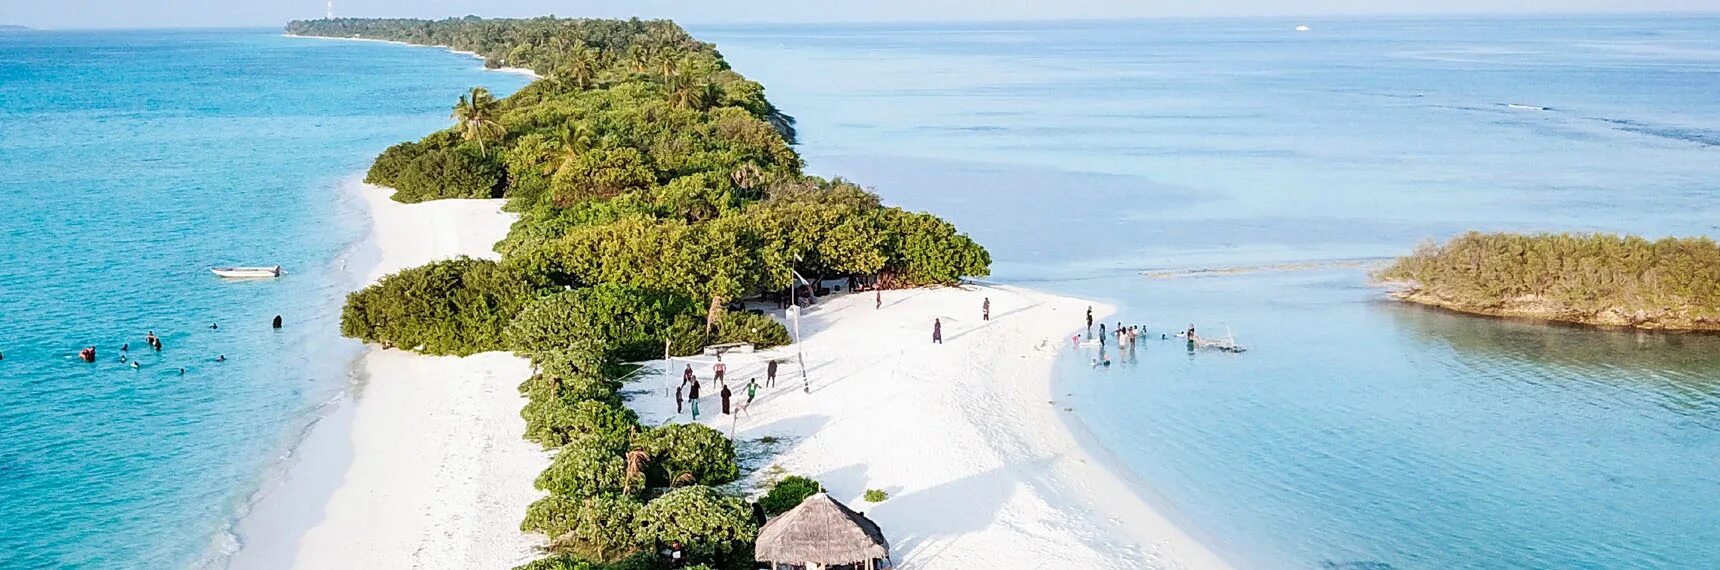 Dhigurah Island Мальдивы. Остров Дигура Мальдивы. Retreats Dhigurah Мальдивы. Дигура Атолл. Local island